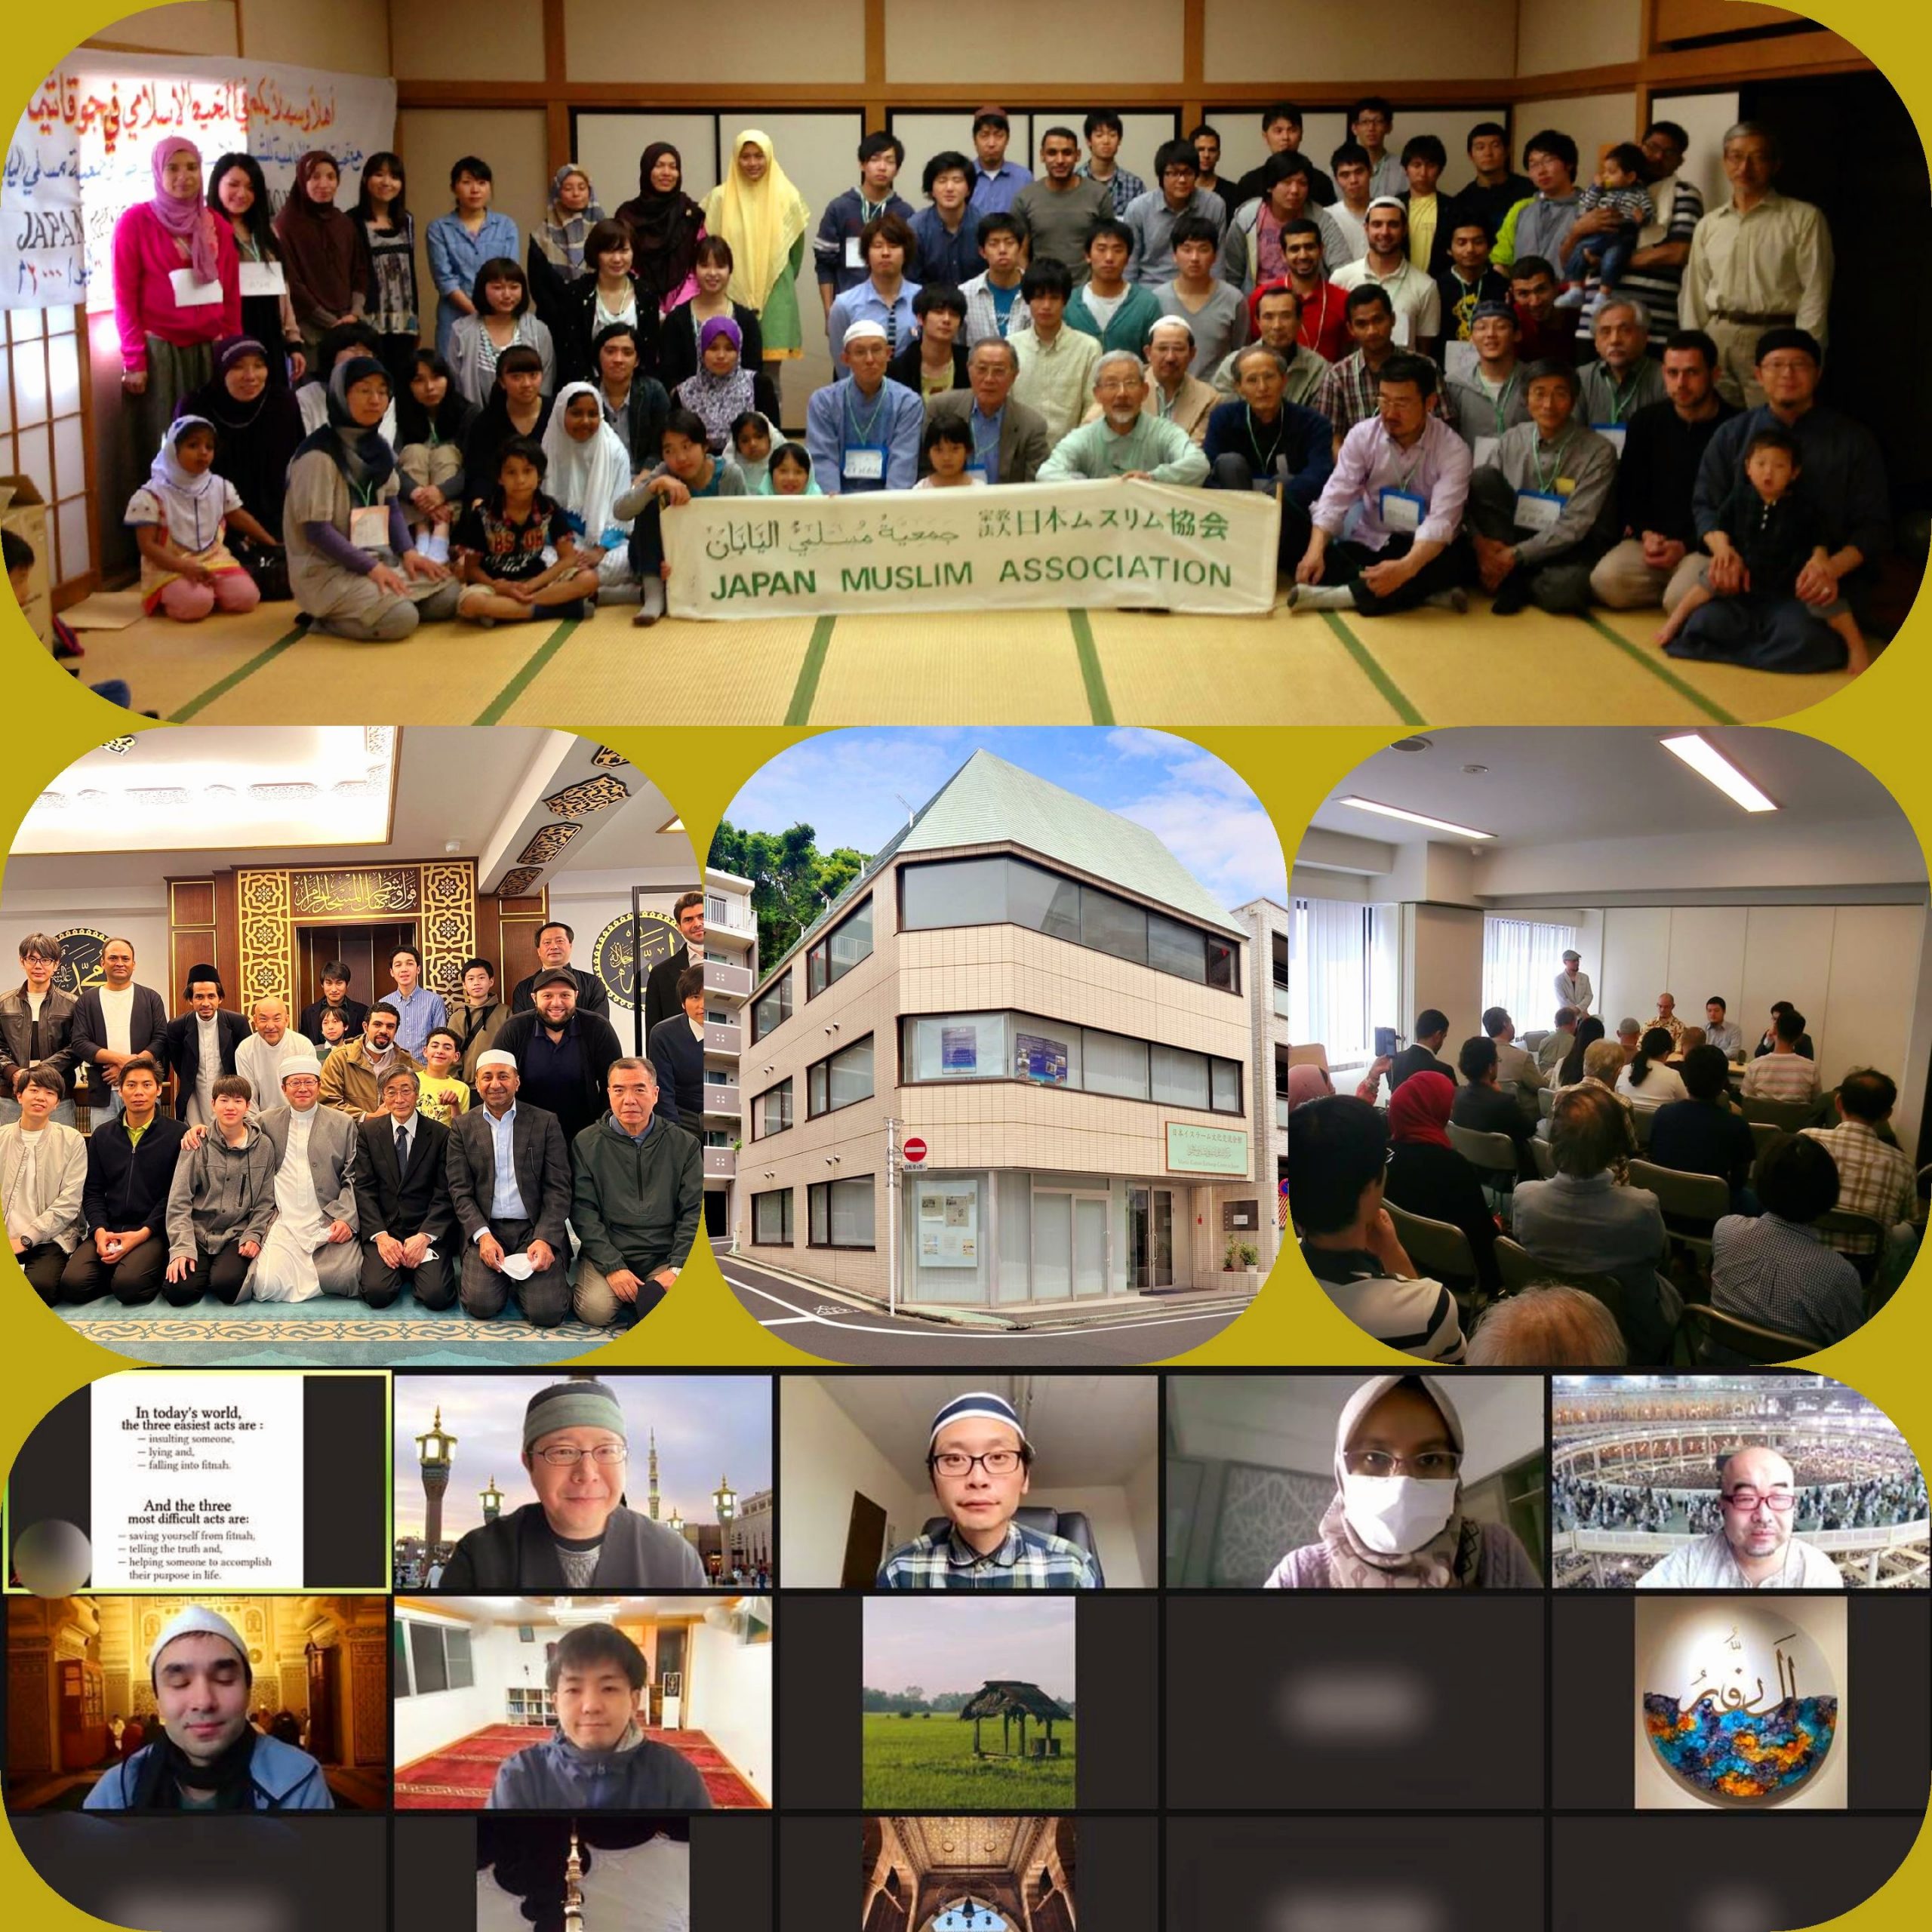 "اجتماع المسلمين" اسم جلسة علمية شهرية لجمعية مسلمي اليابان تحدد منذ بداية العام 12 موضوعًا لدراسته بين اليابانيين المسلمين